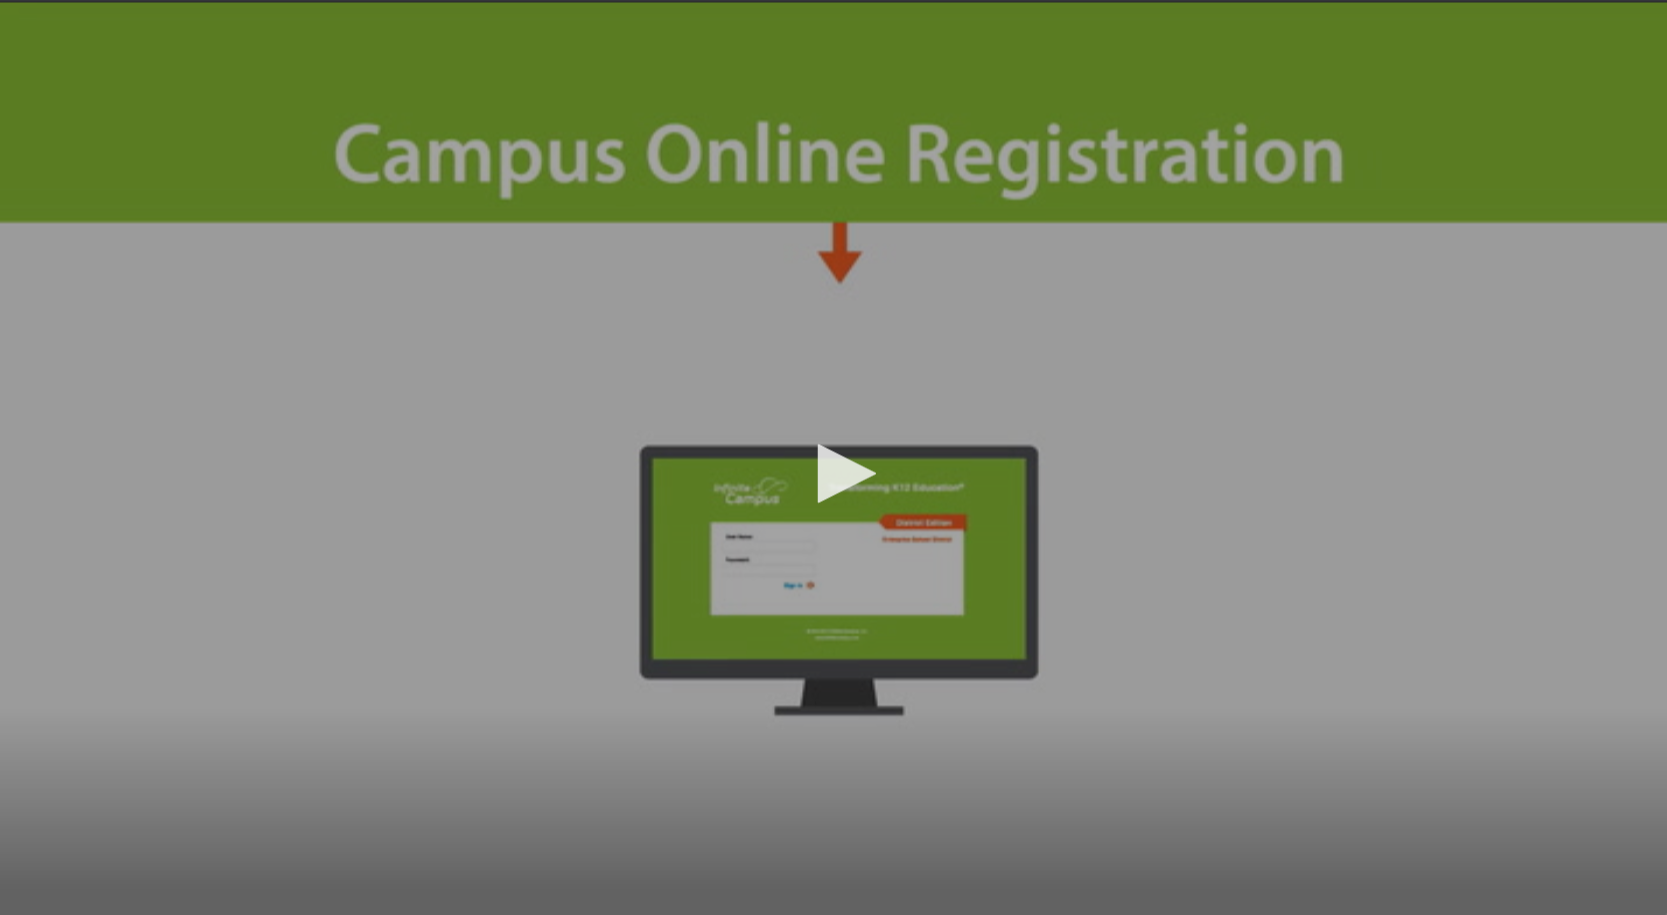 Campus Online Registration